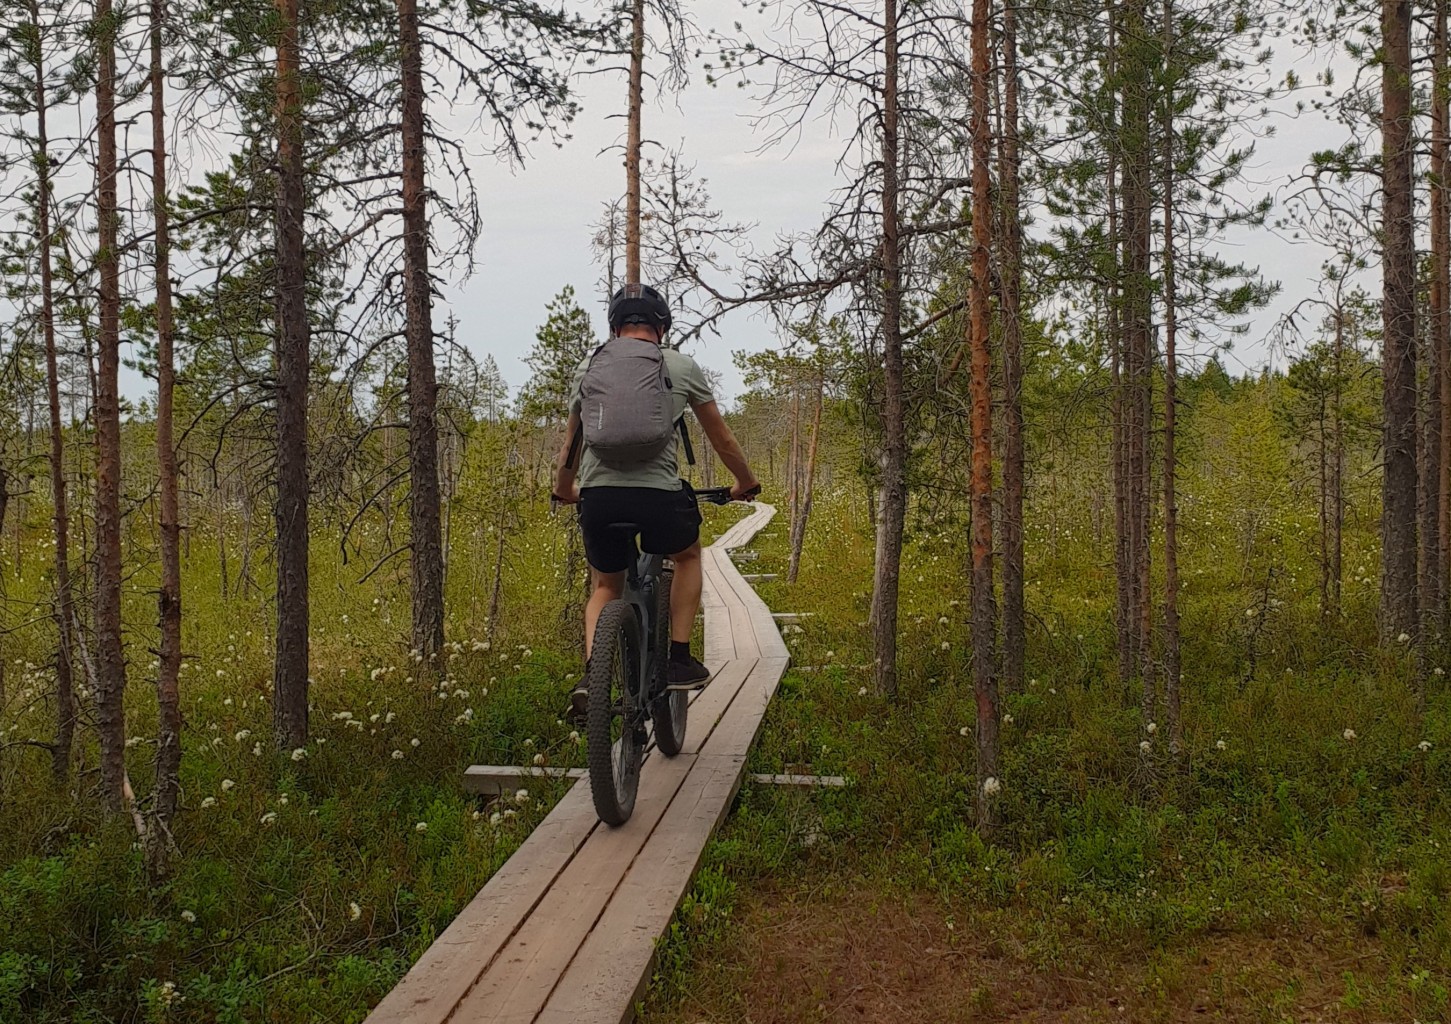 Sähkömaastopyörän vuokraus yhdelle - 2 vrk | Oulu